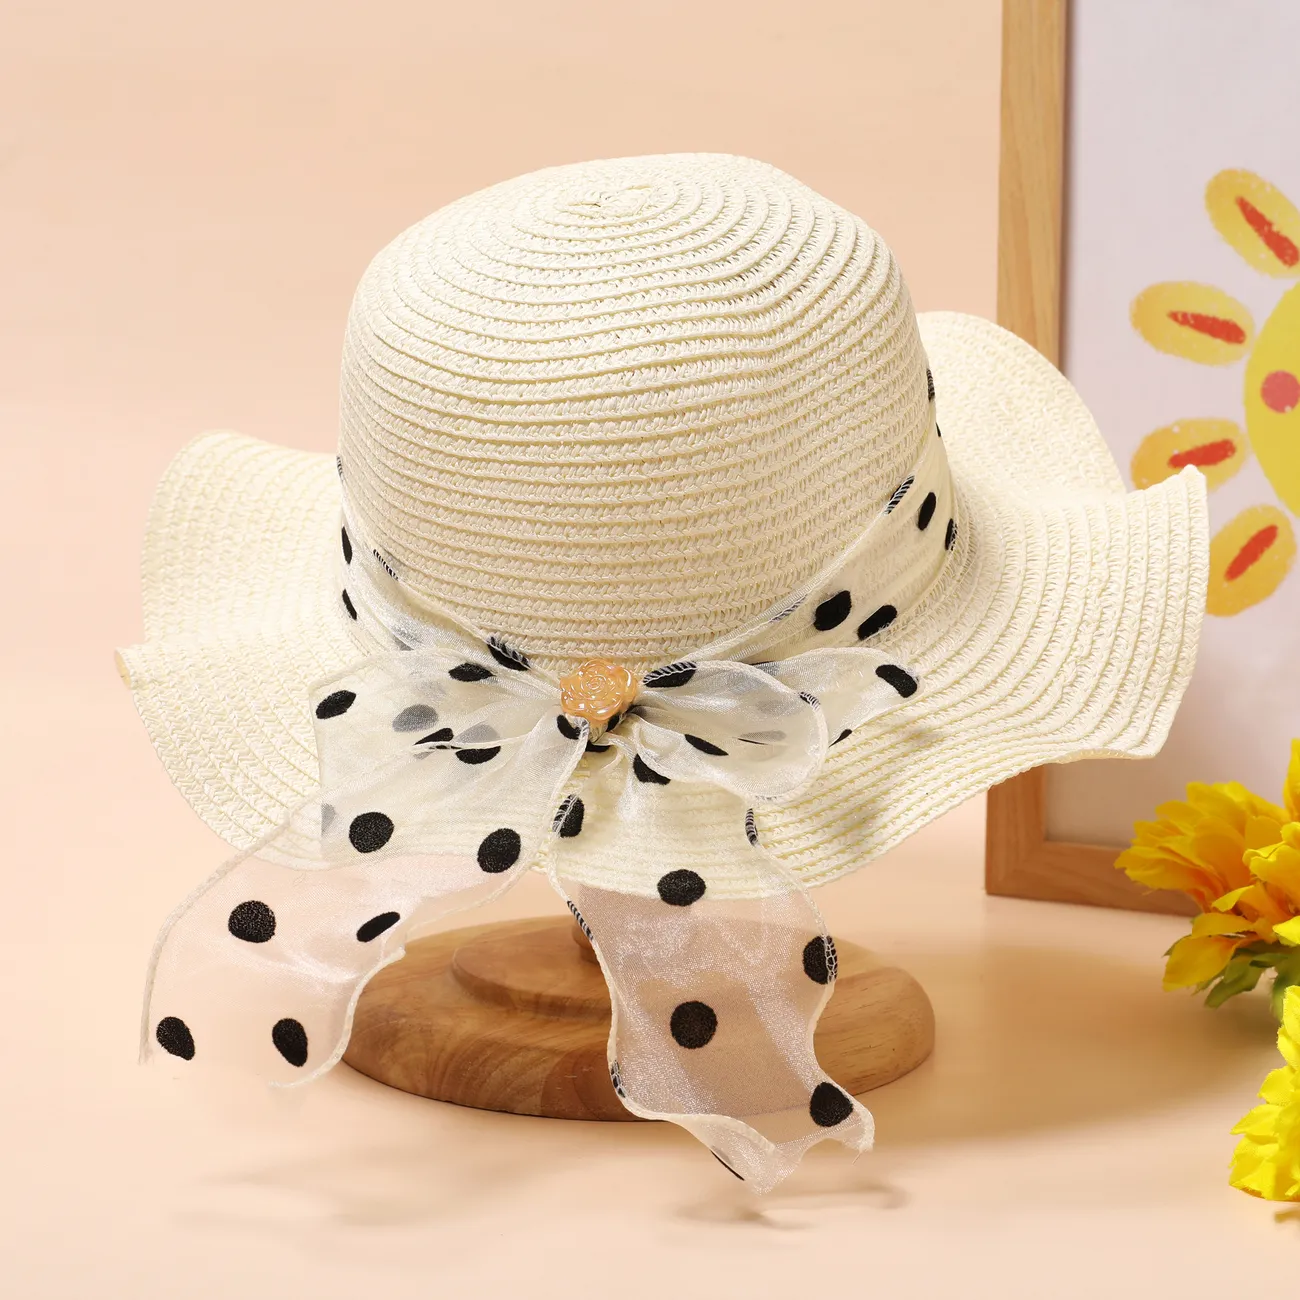 قبعة صيفية من القش للفتيات مع شريط منقط للحماية من الشاطئ وأشعة الشمس، للأعمار من 2 إلى 5 سنوات أبيض قشدي big image 1